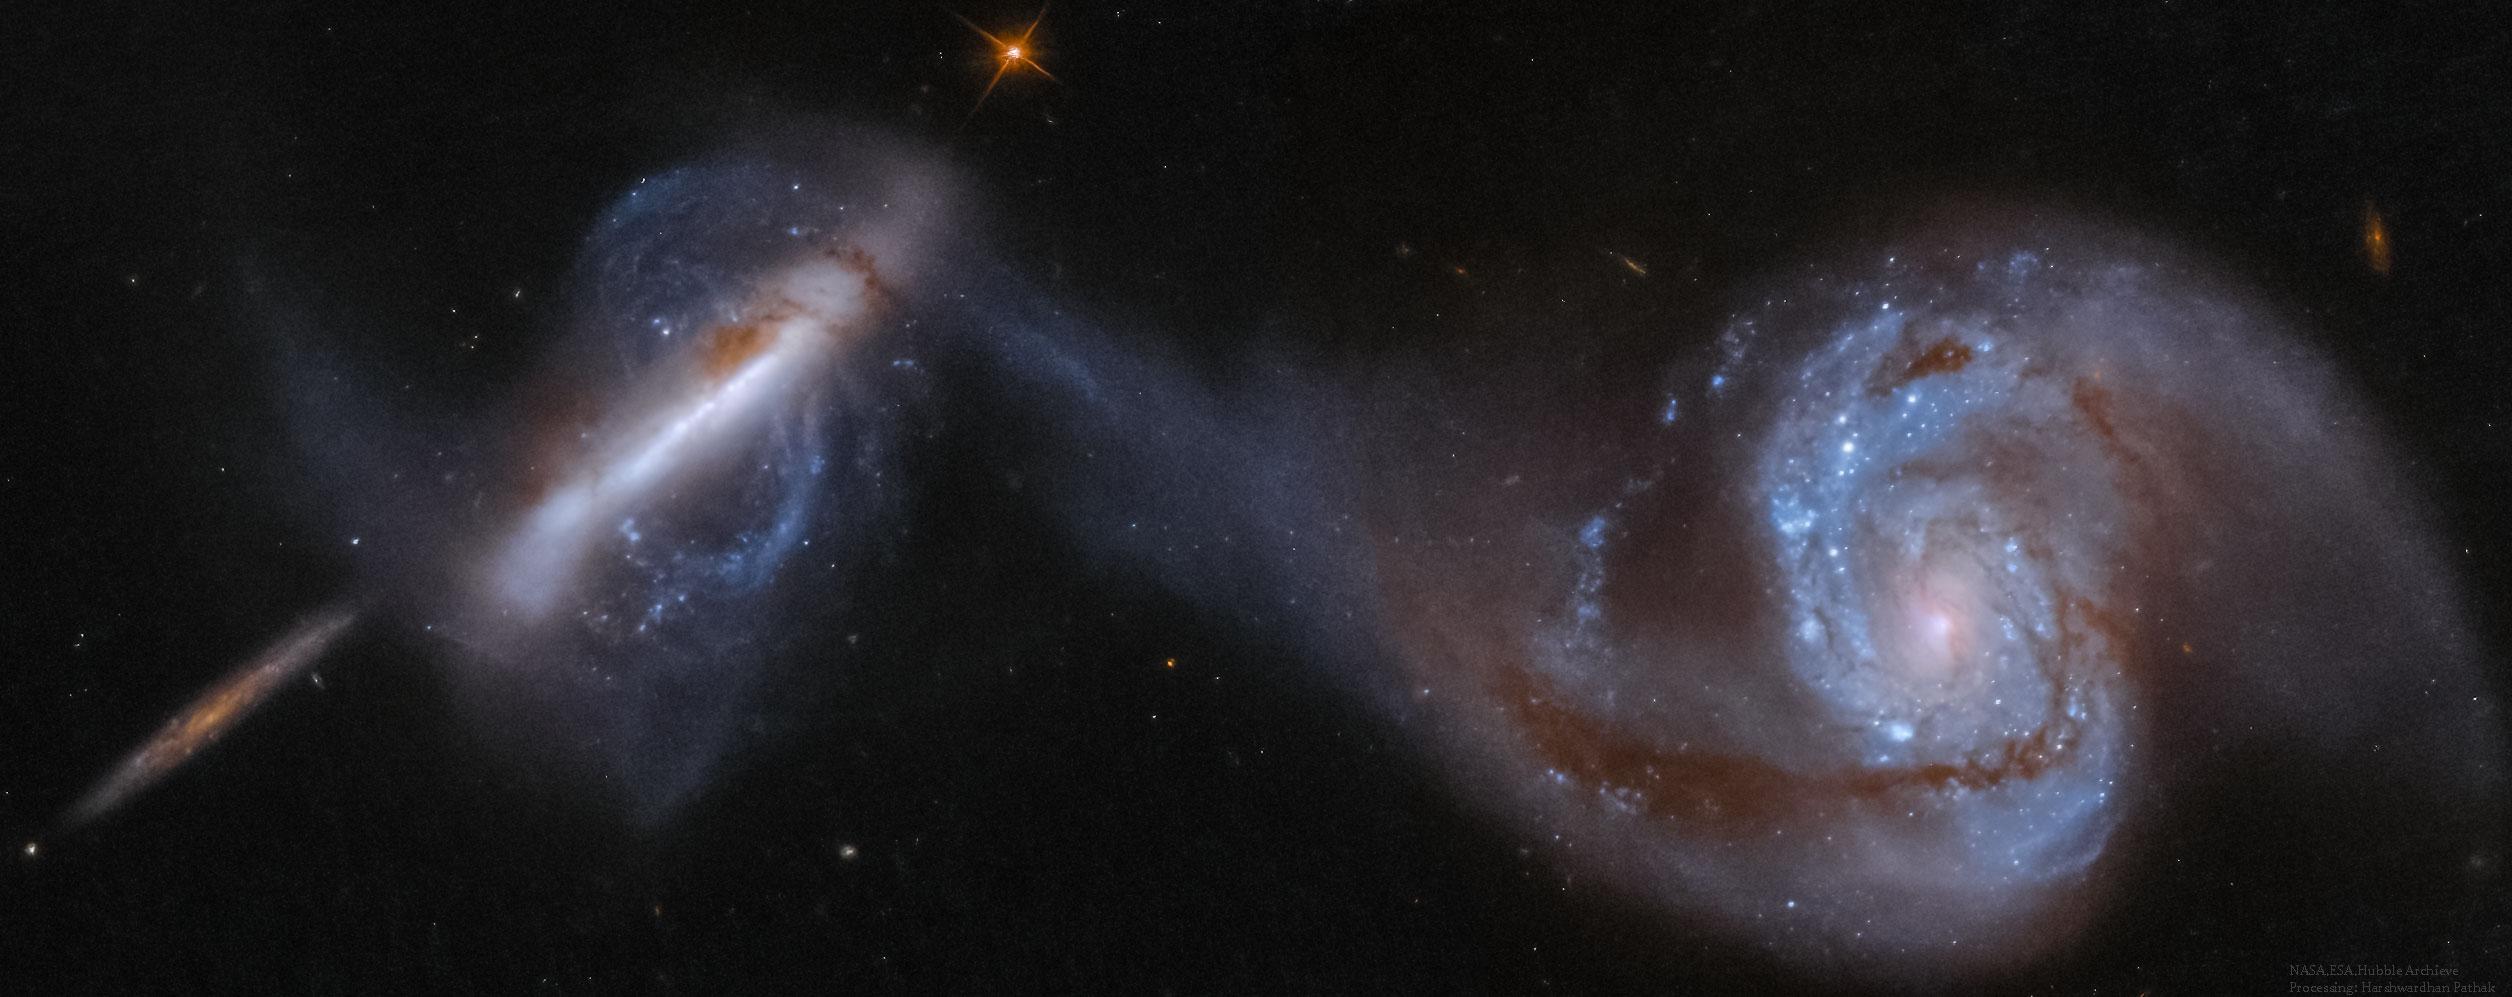 تظهر ثلاث مجرّات، اليُمنتان منهما في تصادم. المجرّة عند أقصى اليمين هي مجرّة حلزونيّة كبيرة مع ذراعٍ موصولة بمجرّة قطبيّة غير اعتياديّة يساراً. يُعتَقَد أنّ المجرّة الأصغر عند أقصى اليسار بعيدةً في الخلفيّة.